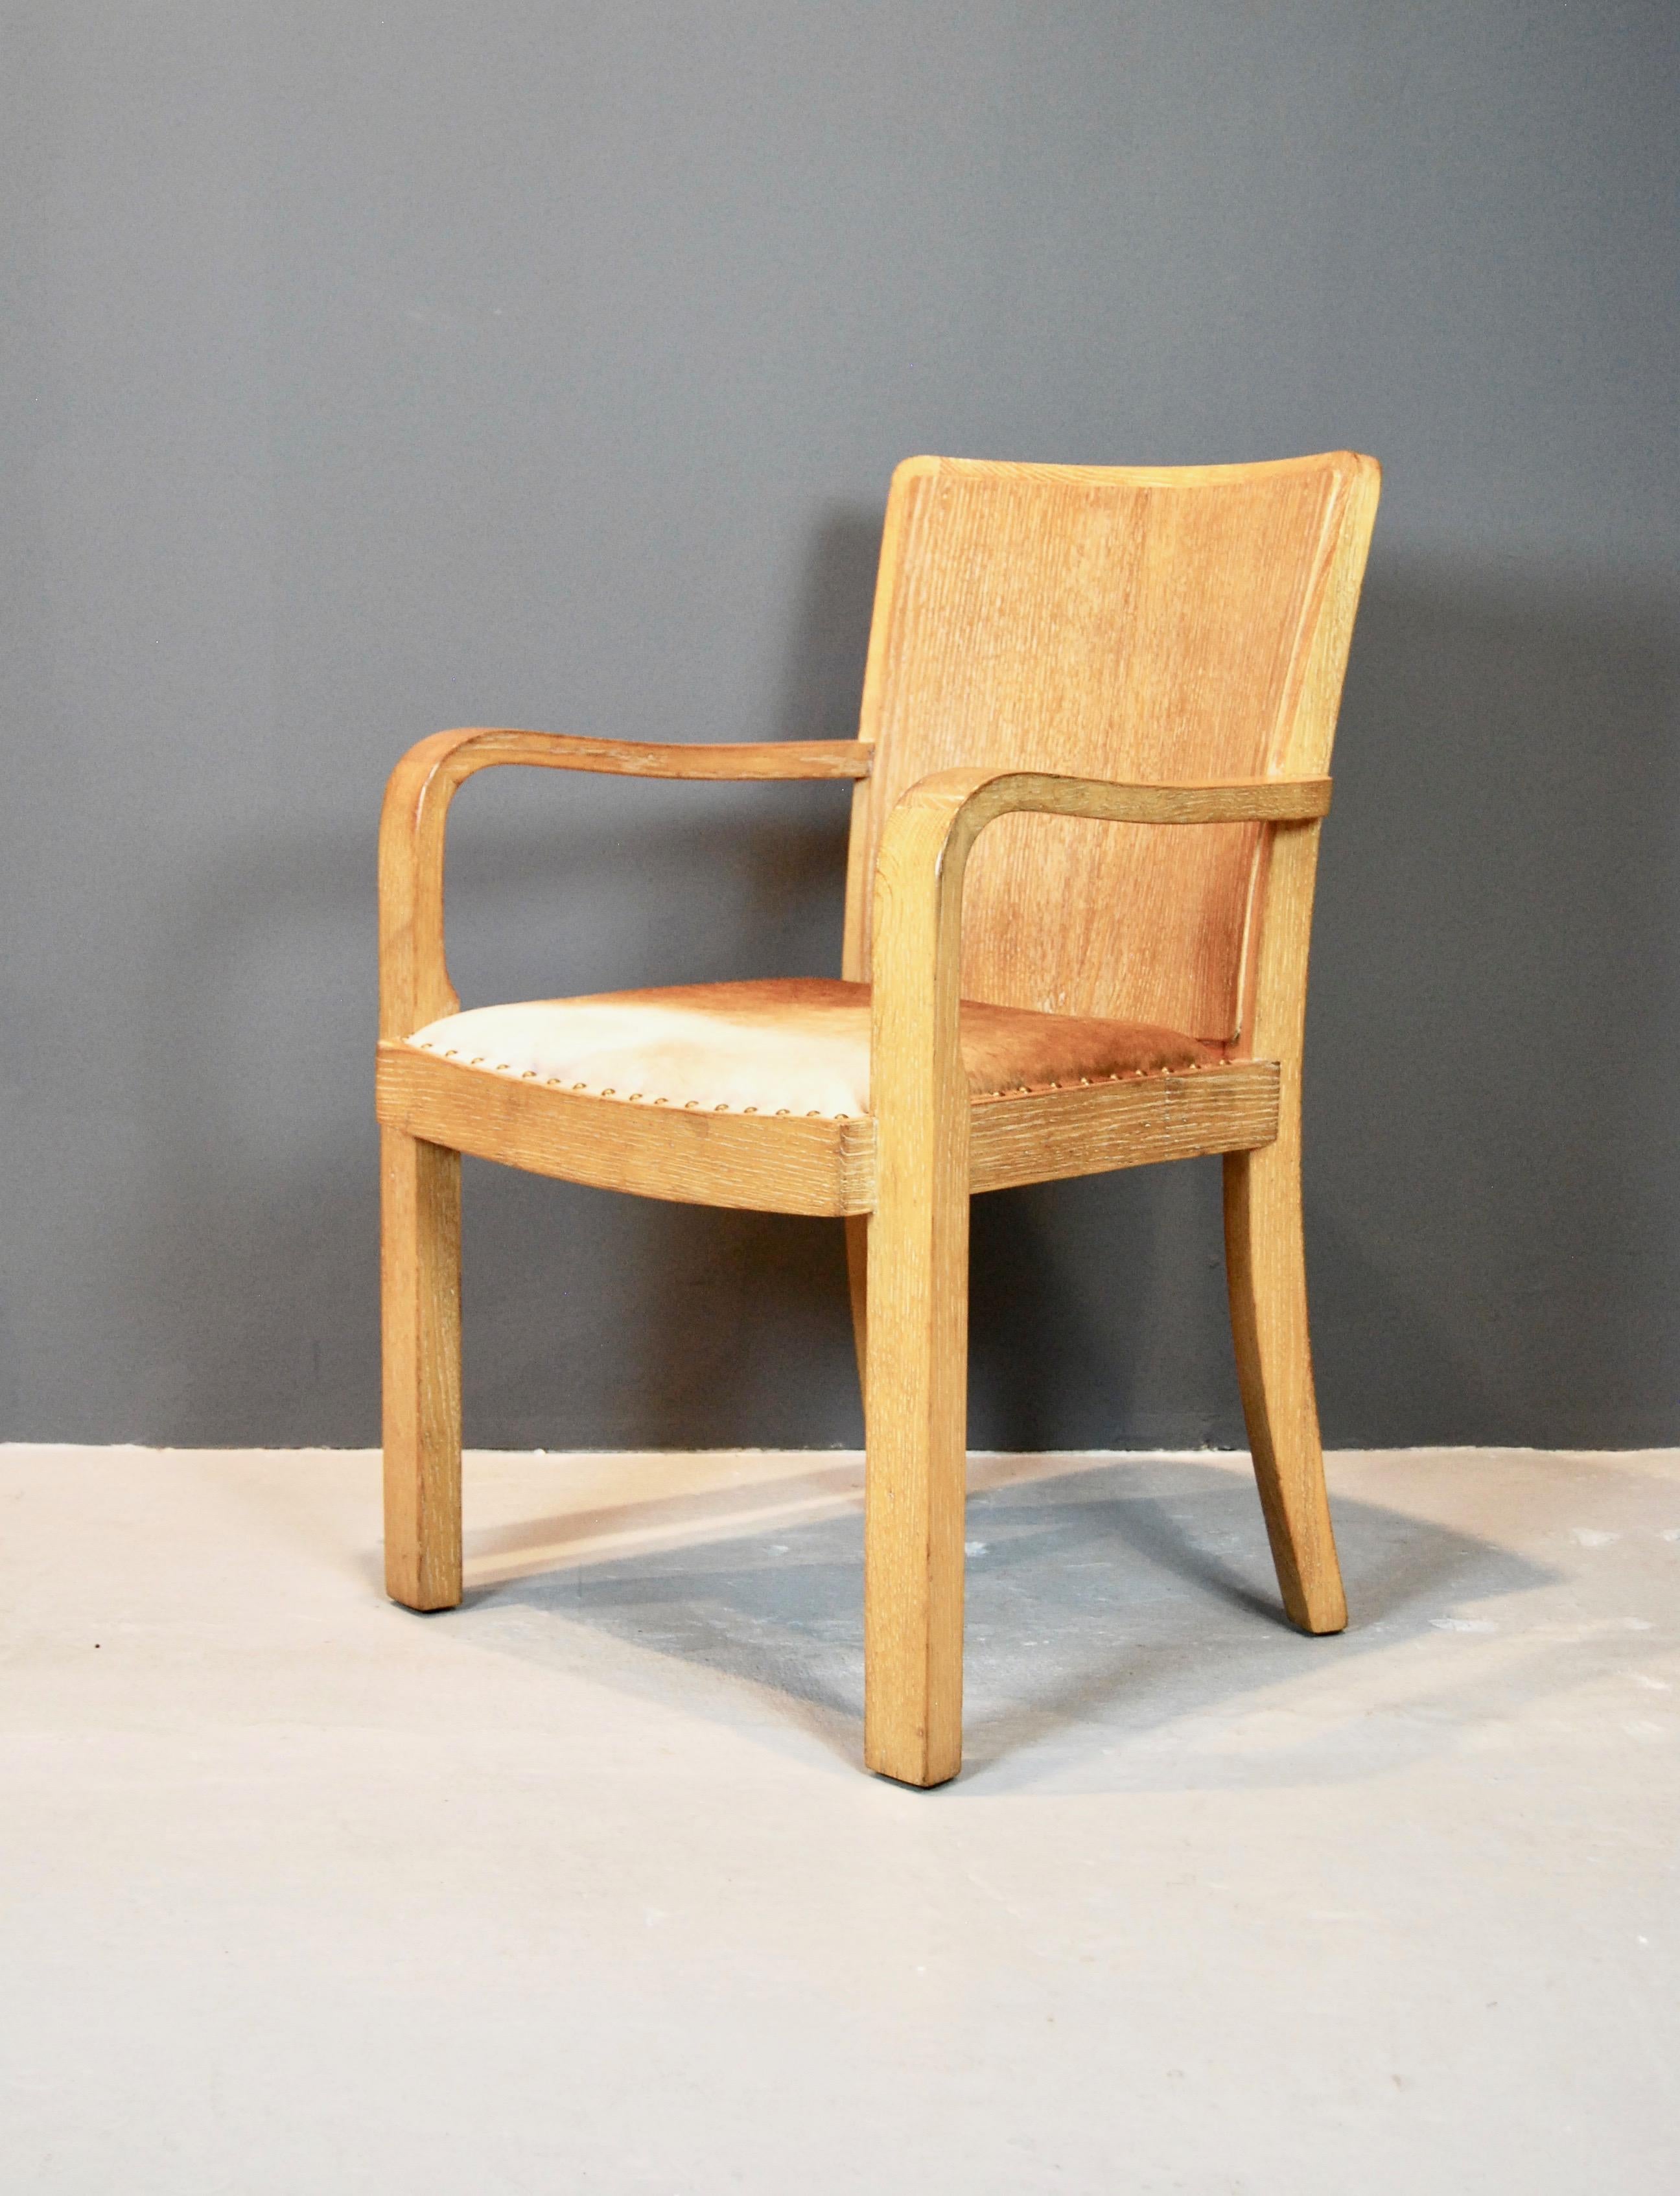 Großer maßstabsgetreuer Sessel, perfekt für einen Schreibtisch, aus gerade geschnittener Eiche, schön keramisiert. 
Das zweifarbige Ponyfell ergänzt das Holz wunderbar.
 Durchgängig Jean-Michel Frank-Elemente.